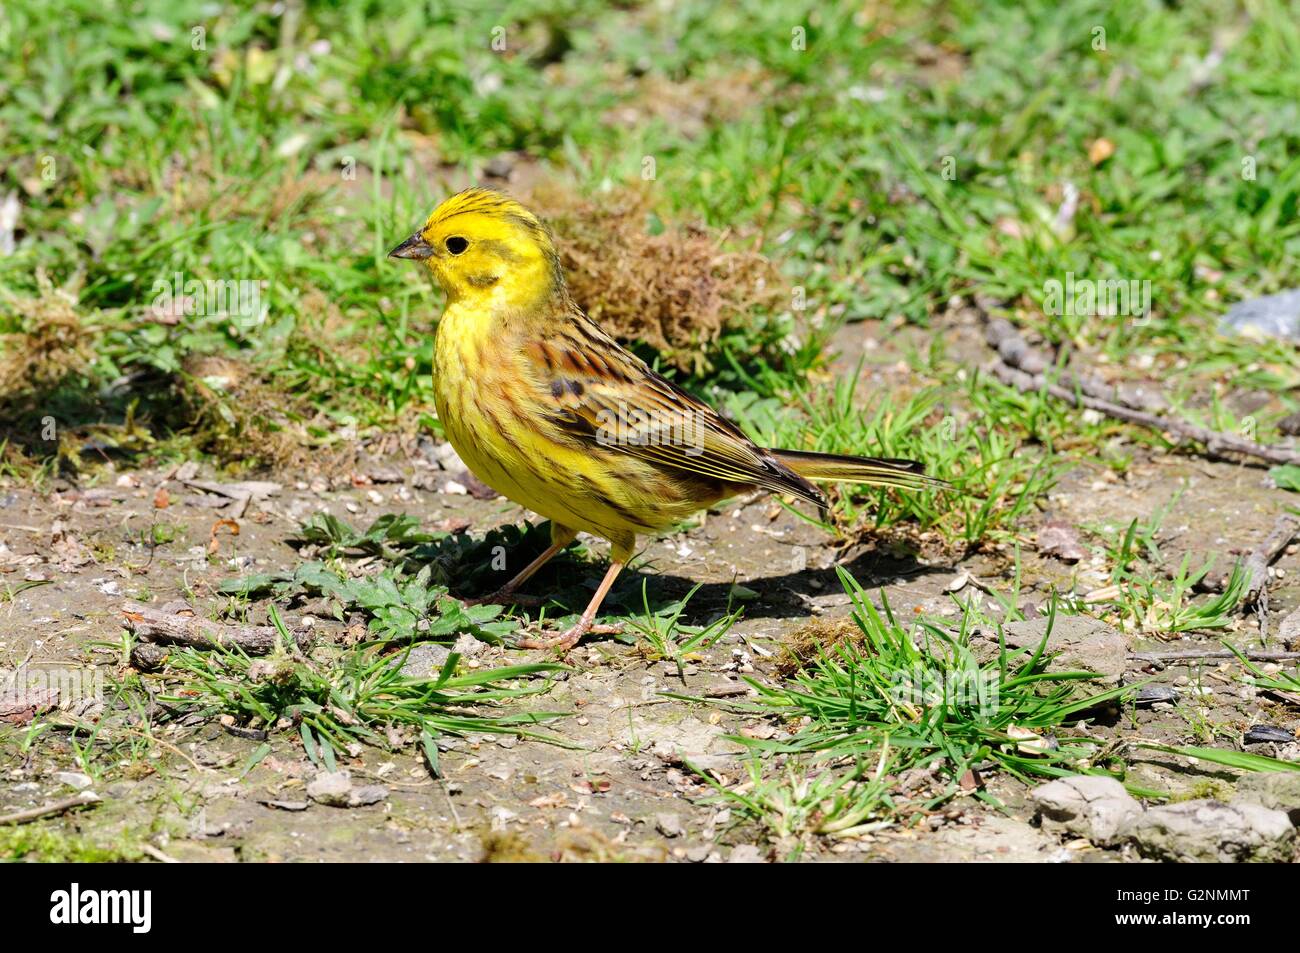 Marteau jaune mâle nourrir les oiseaux sur le terrain Emberiza citrinella Banque D'Images